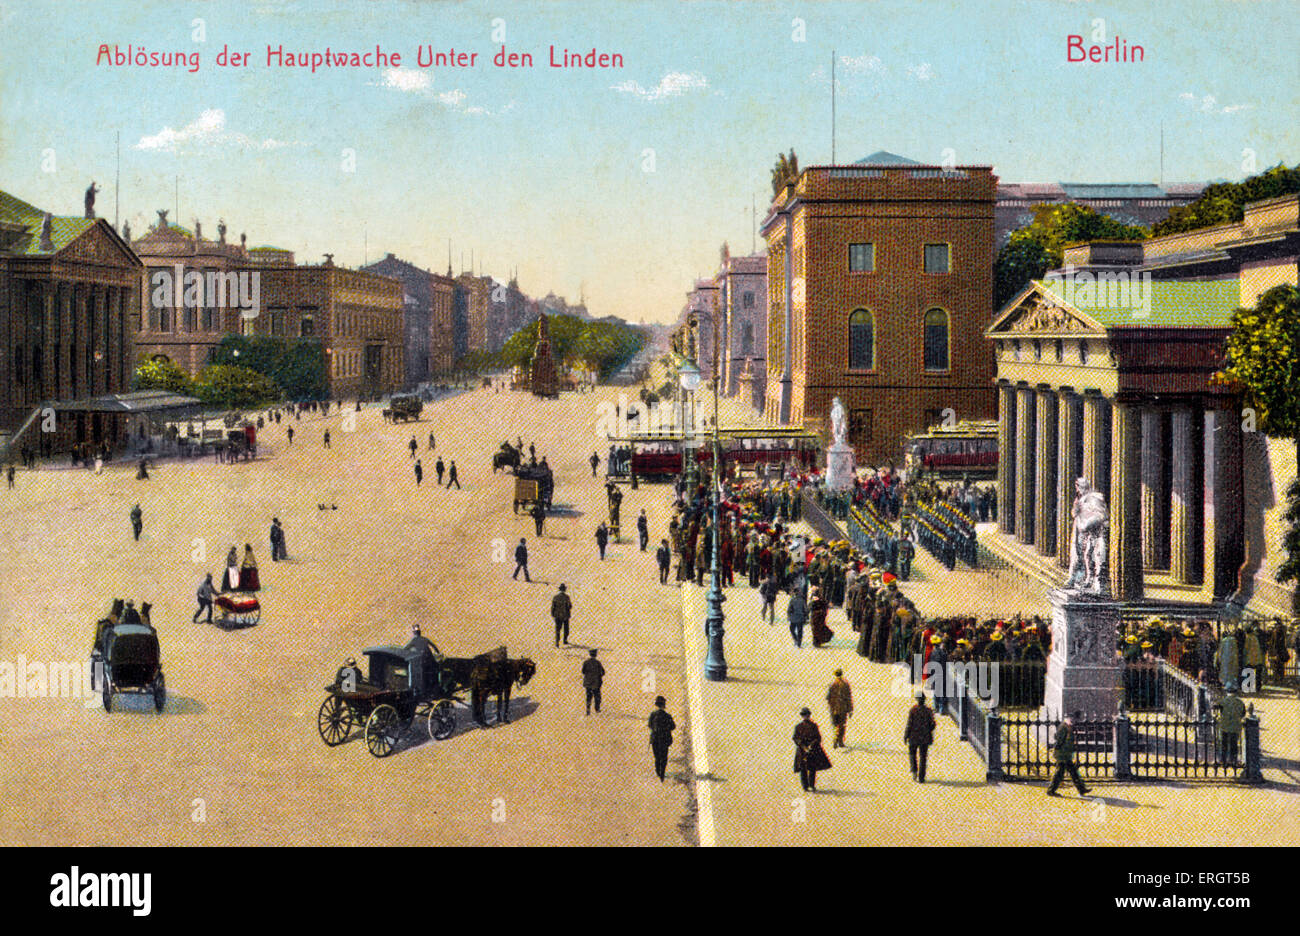 Berlin an der Wende des 20. Jahrhunderts. Unter Den Linden und das Opera House auf der rechten Seite. Straßenszene. Fotografische gemalt Stockfoto